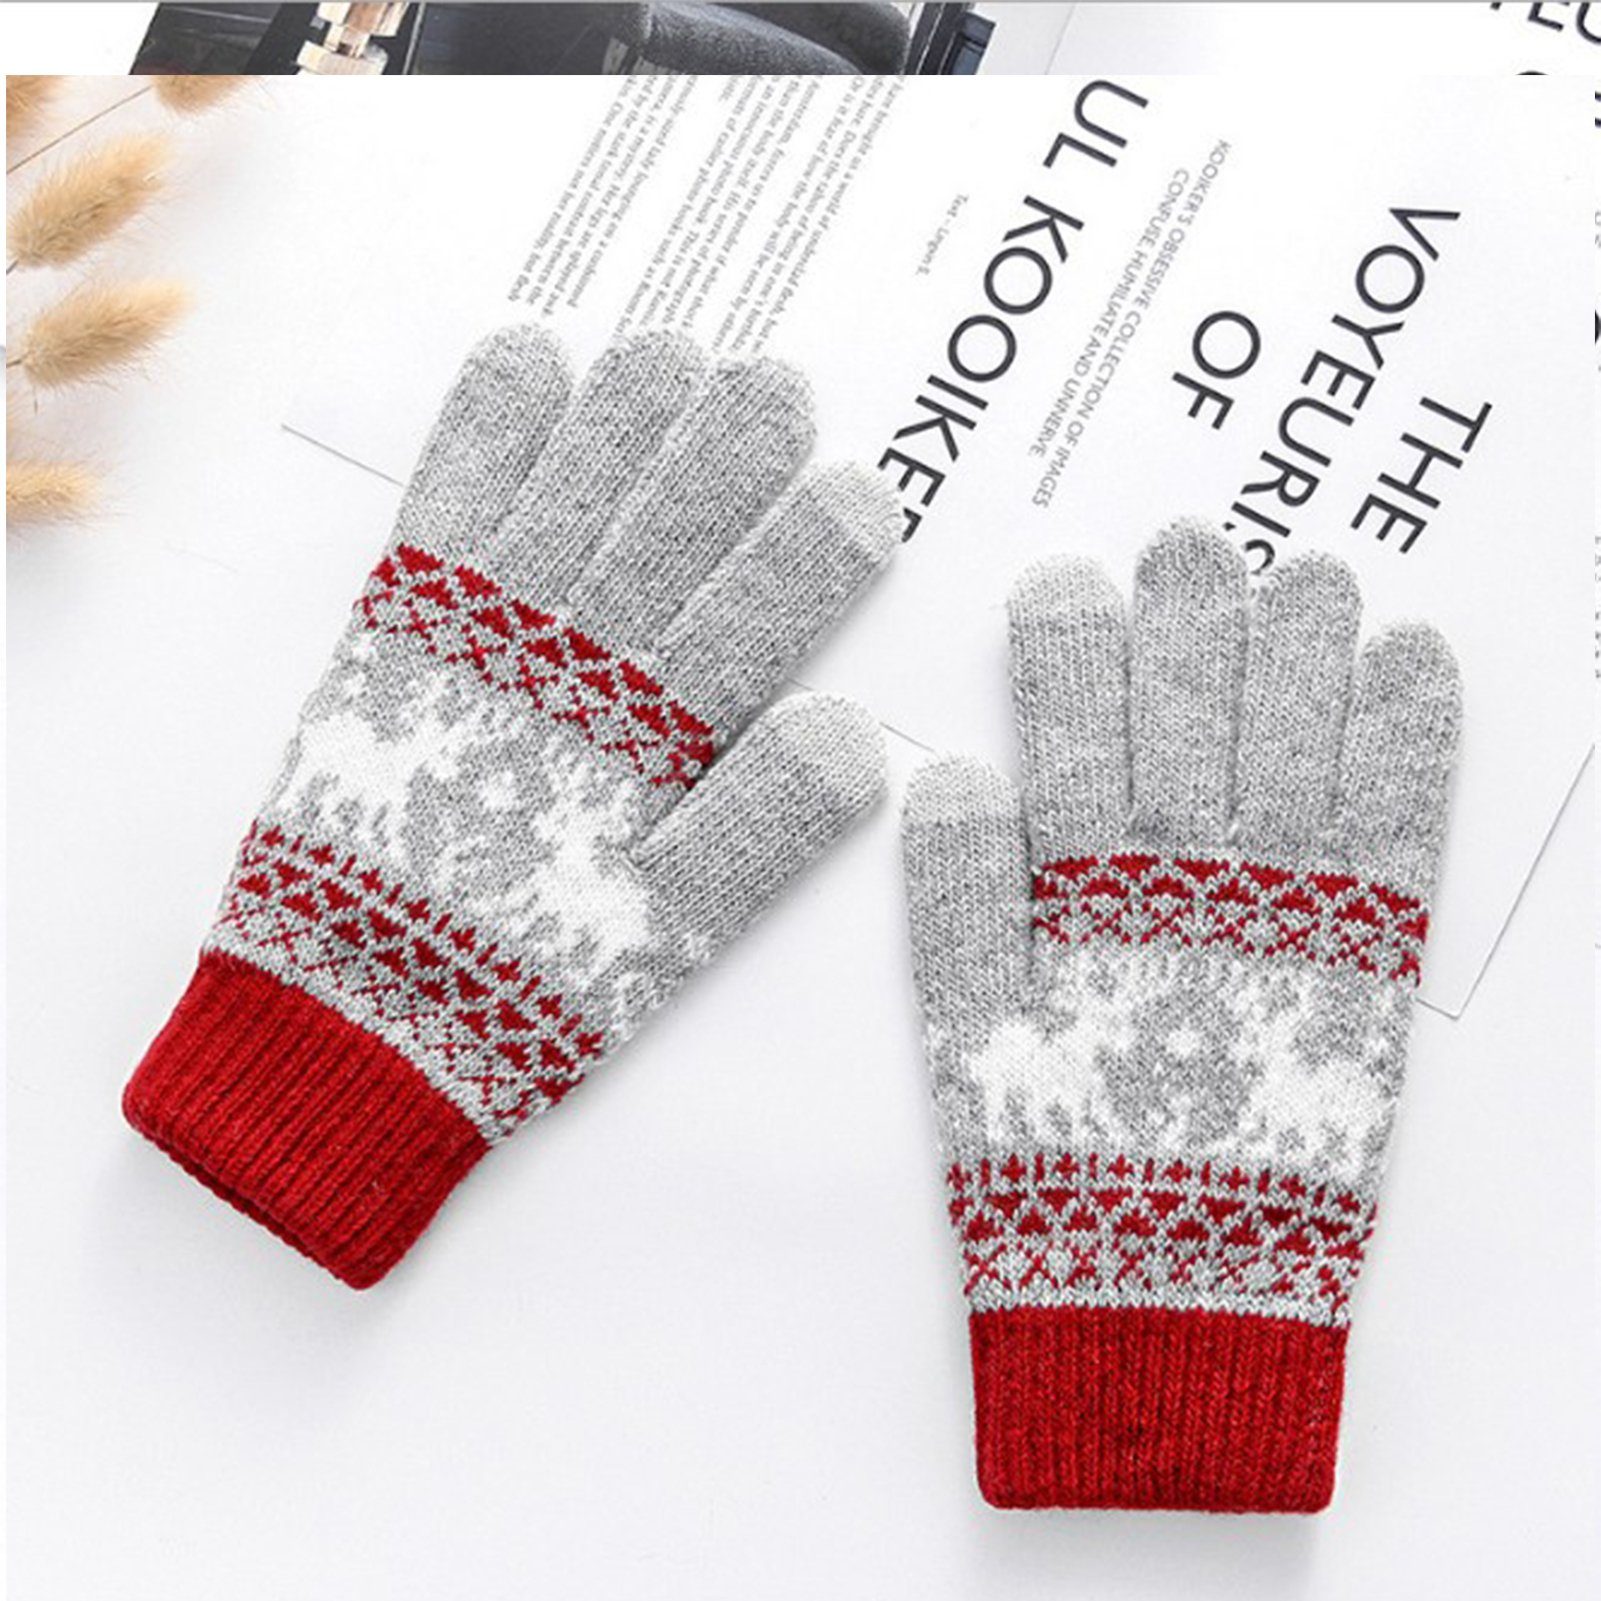 Großer Verkauf! Blusmart Strickhandschuhe Verdickte Touchscreen-Handschuhe rot Gestrickte Wärmende Fleecehandschuhe grau Damenhandschuhe